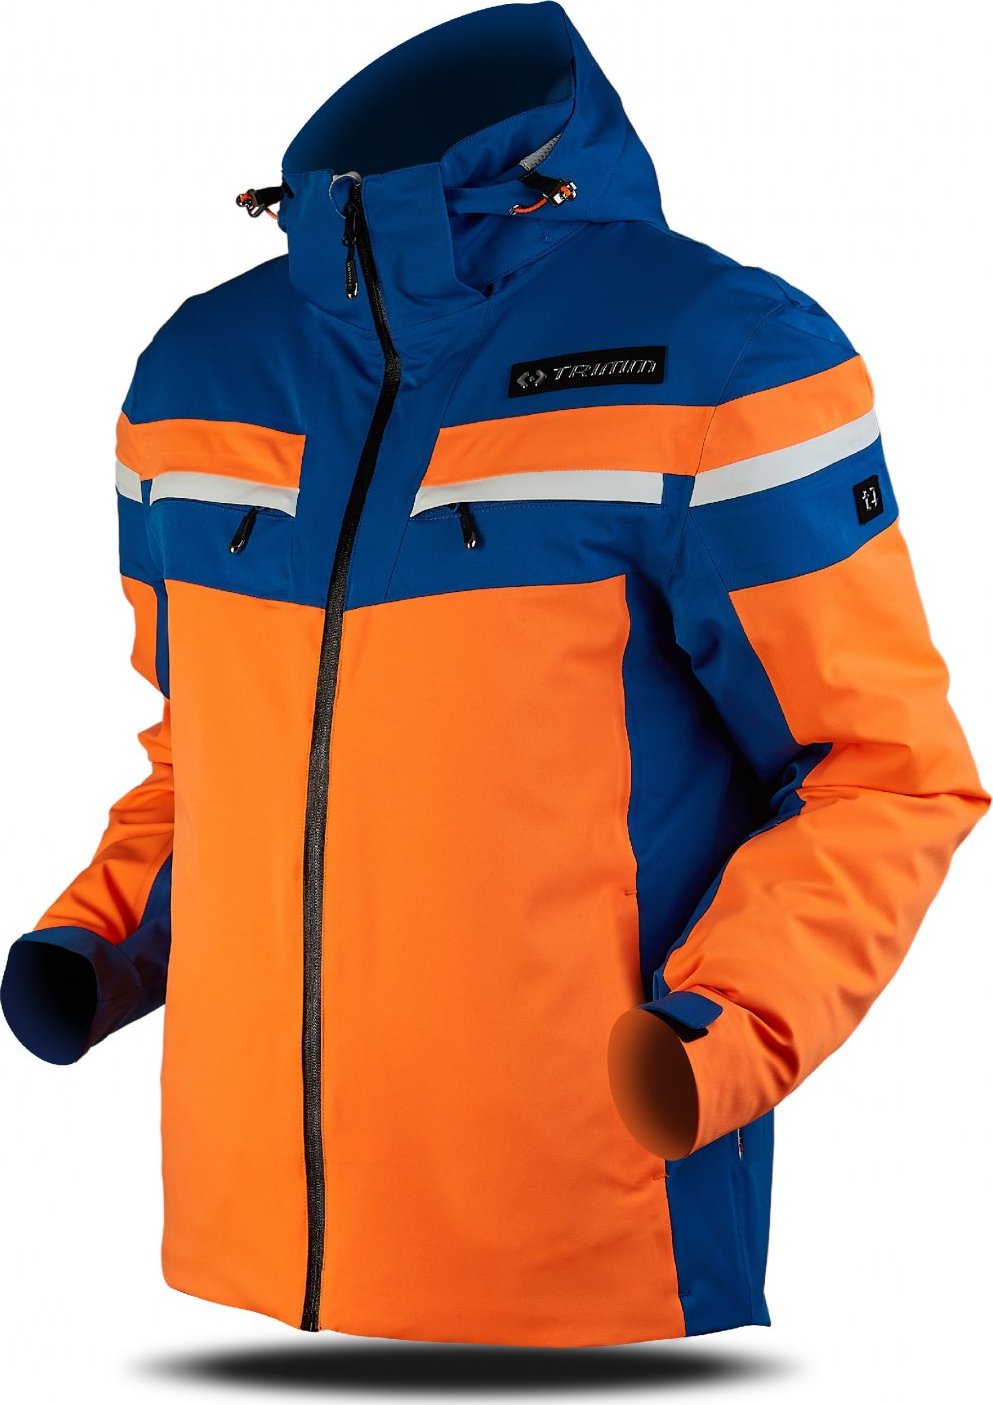 Pánská lyžařská bunda TRIMM Fusion oranžová Velikost: XL, Barva: signal orange/jeans blue/white